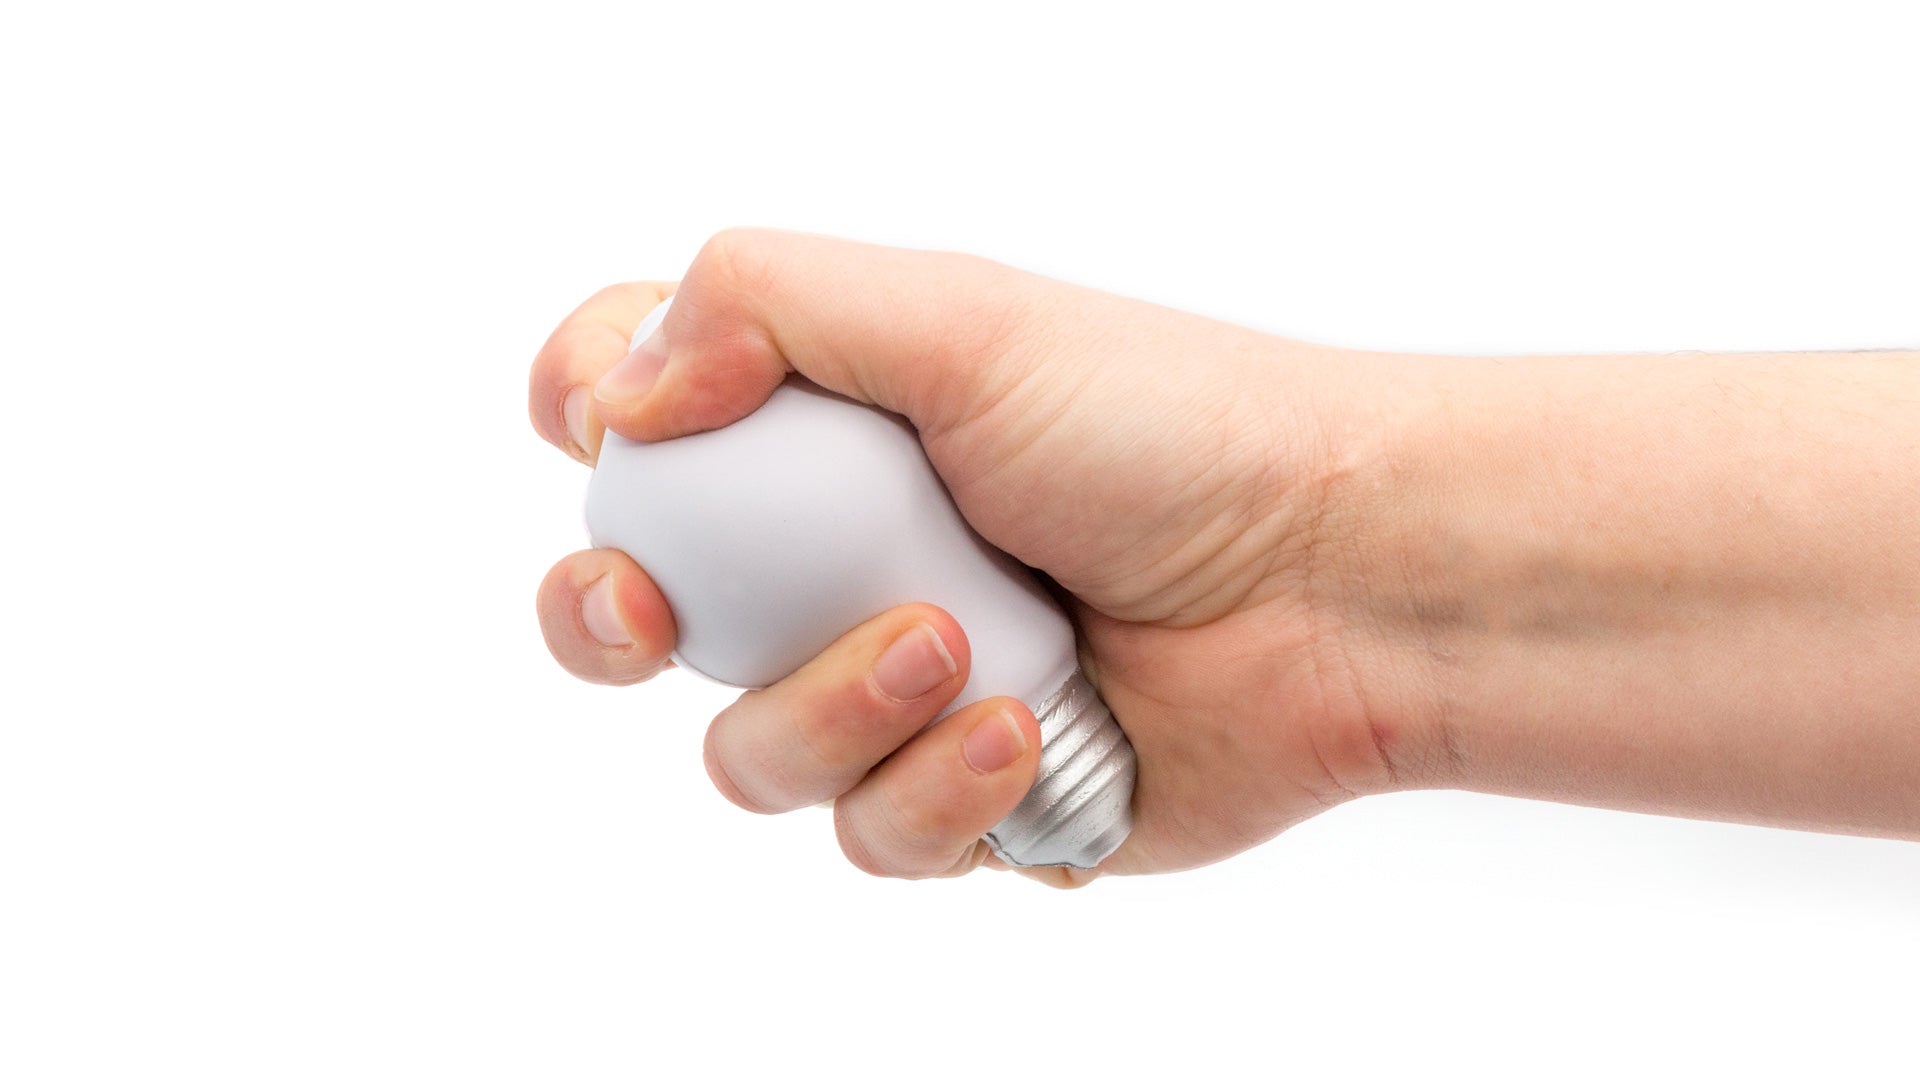 Ampoule antistress avec rembourrage en PU brillant, idéale pour apaiser le stress